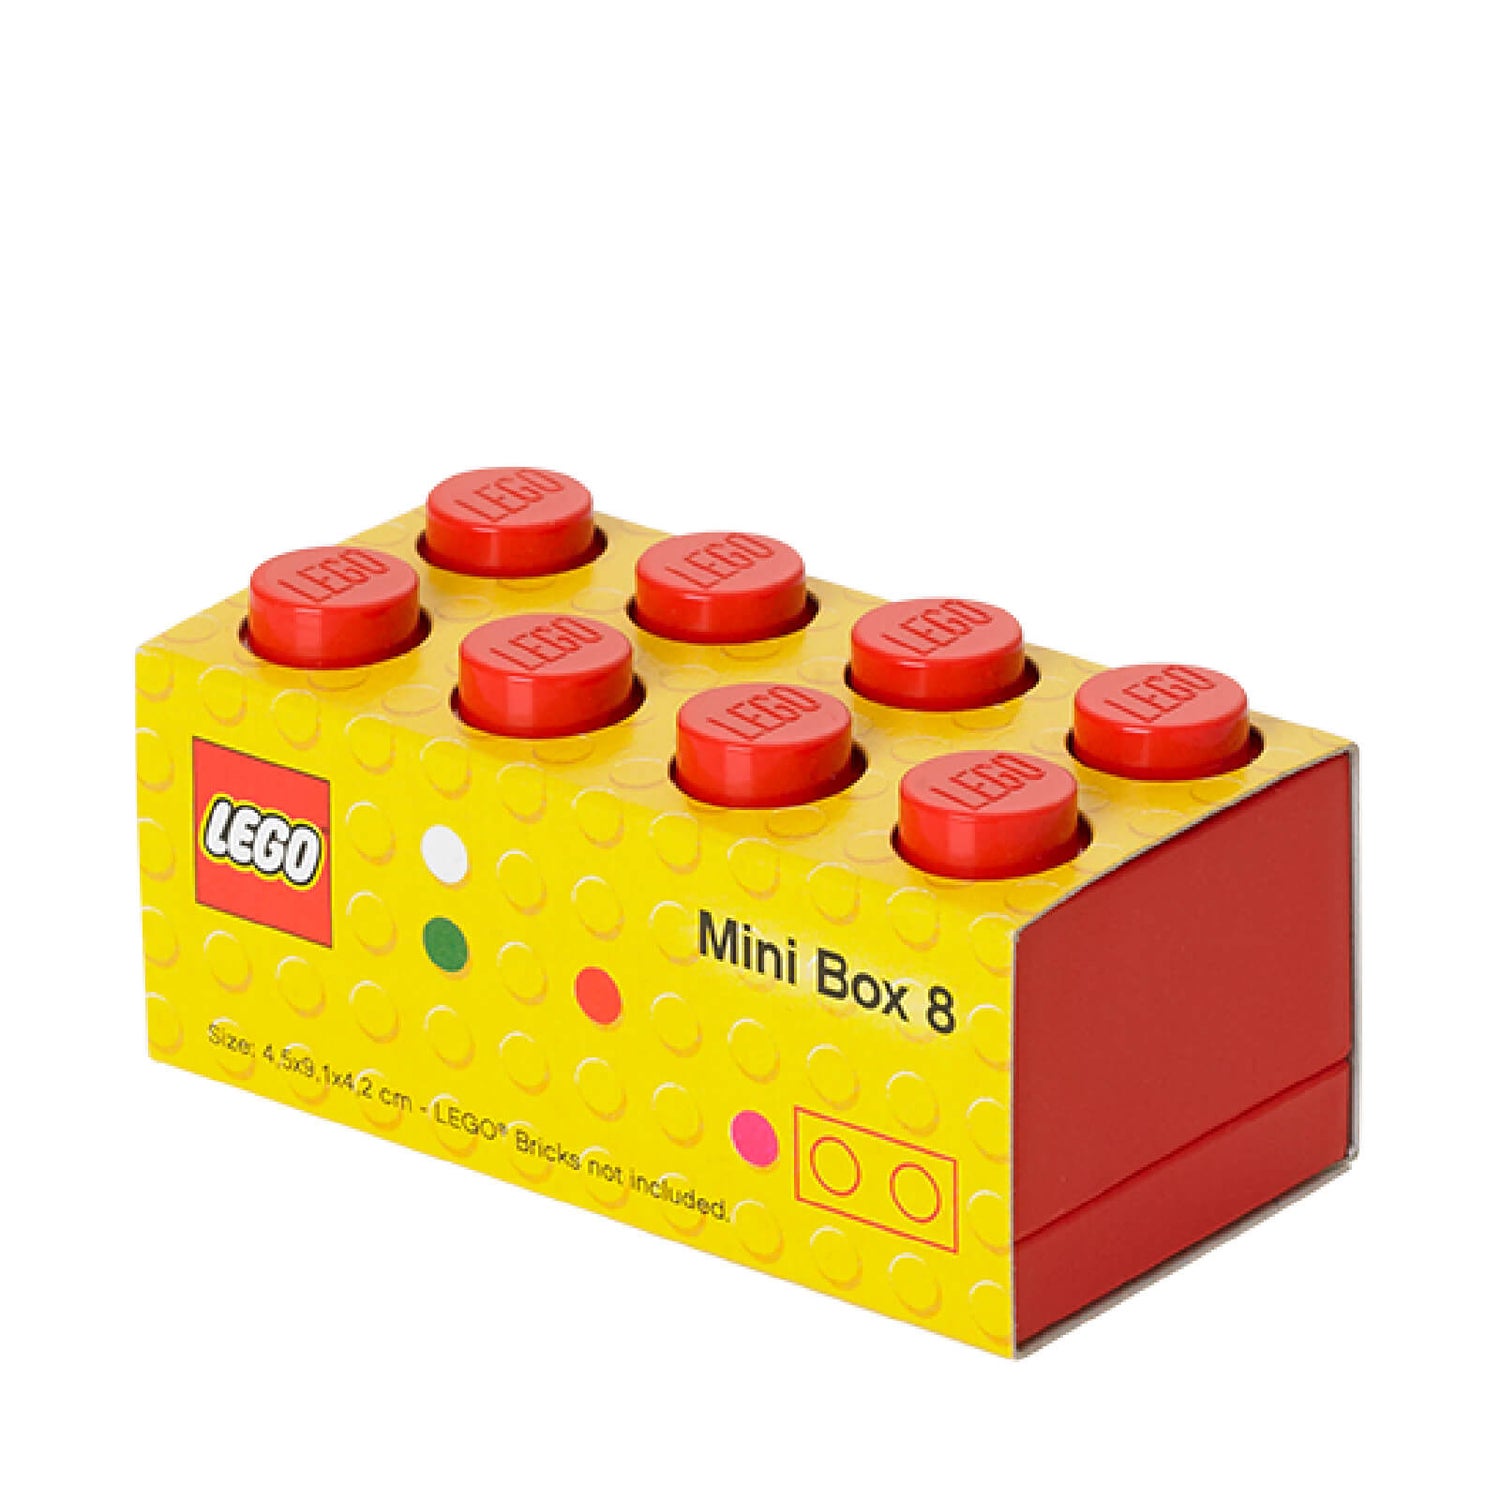 LEGO Mini Box 8 - Bright Red